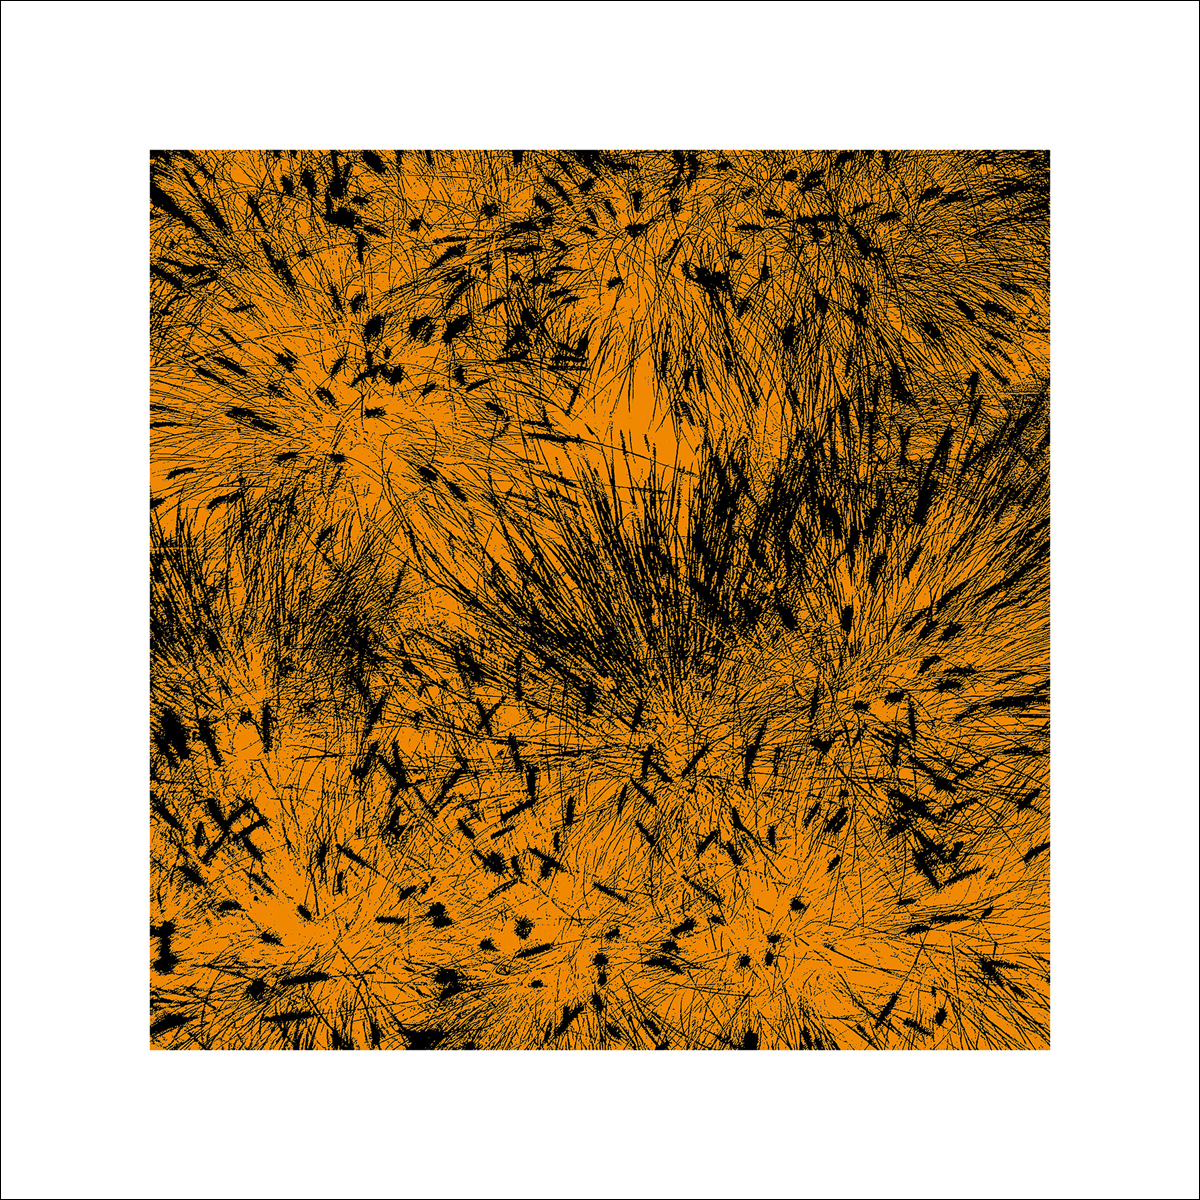 Polla, D.: Grass (orange), 2011 ZG